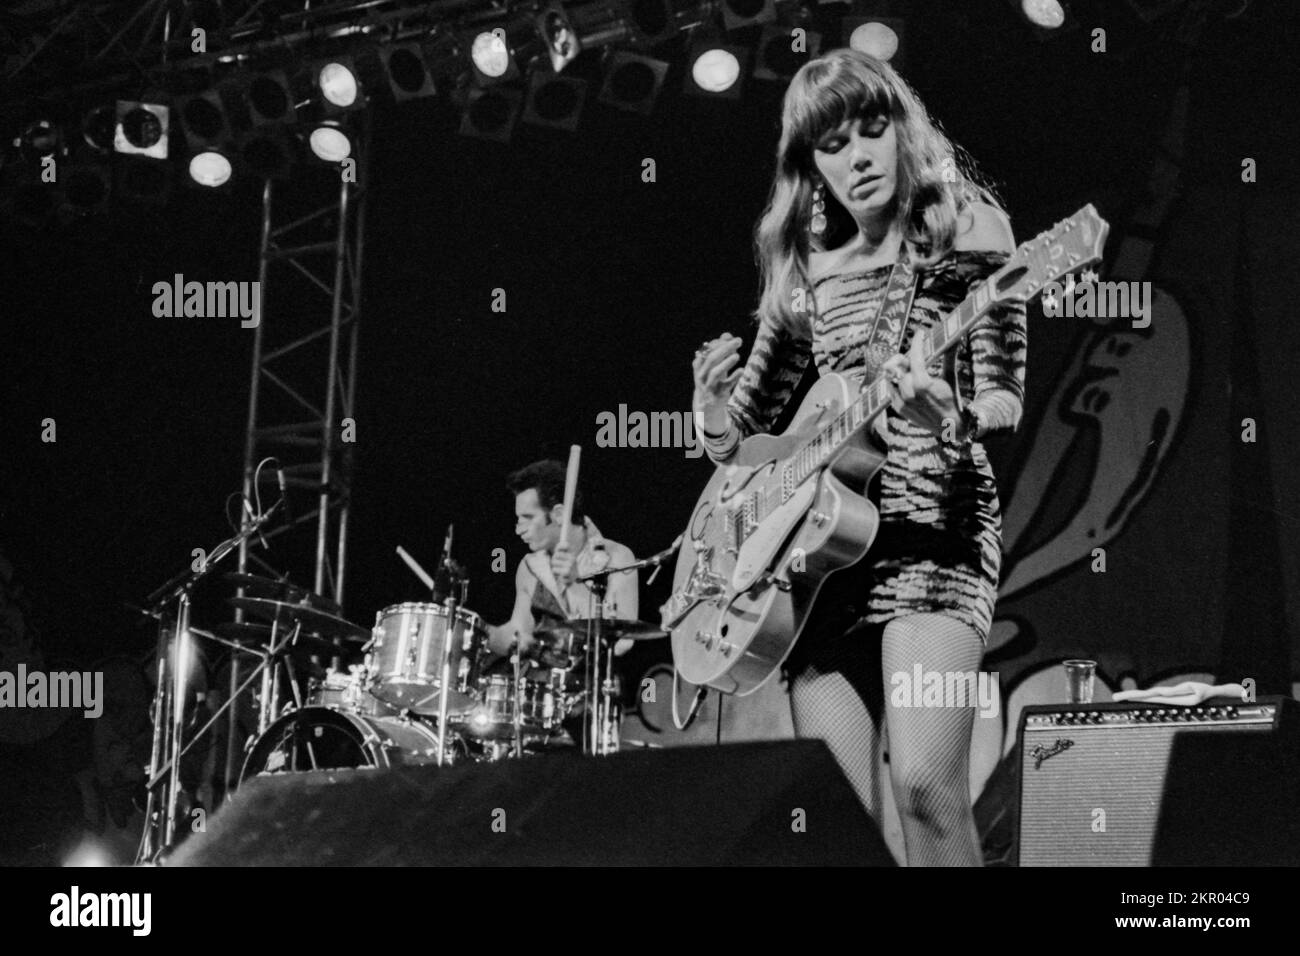 The Cramps live en concert en France - poison Ivy de The Cramps au Tamaris Rock Festival 1992 (background : Nick KNOX à la batterie) Banque D'Images